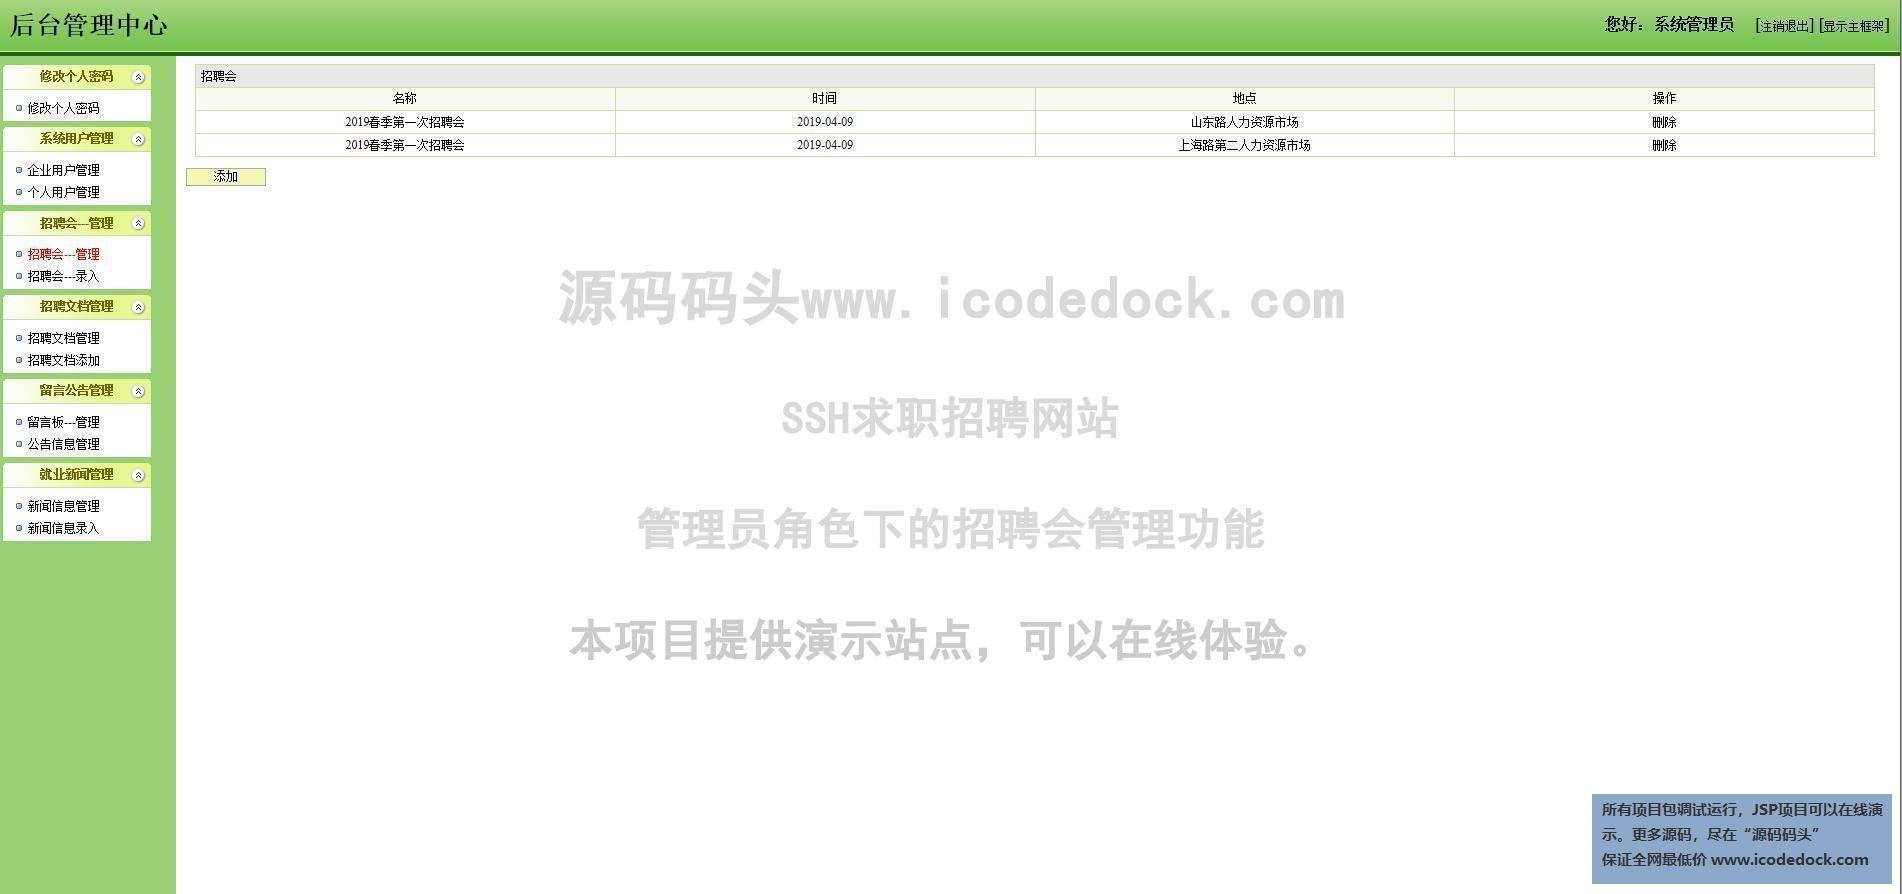 源码码头-SSH求职招聘网站-管理员角色-招聘会管理